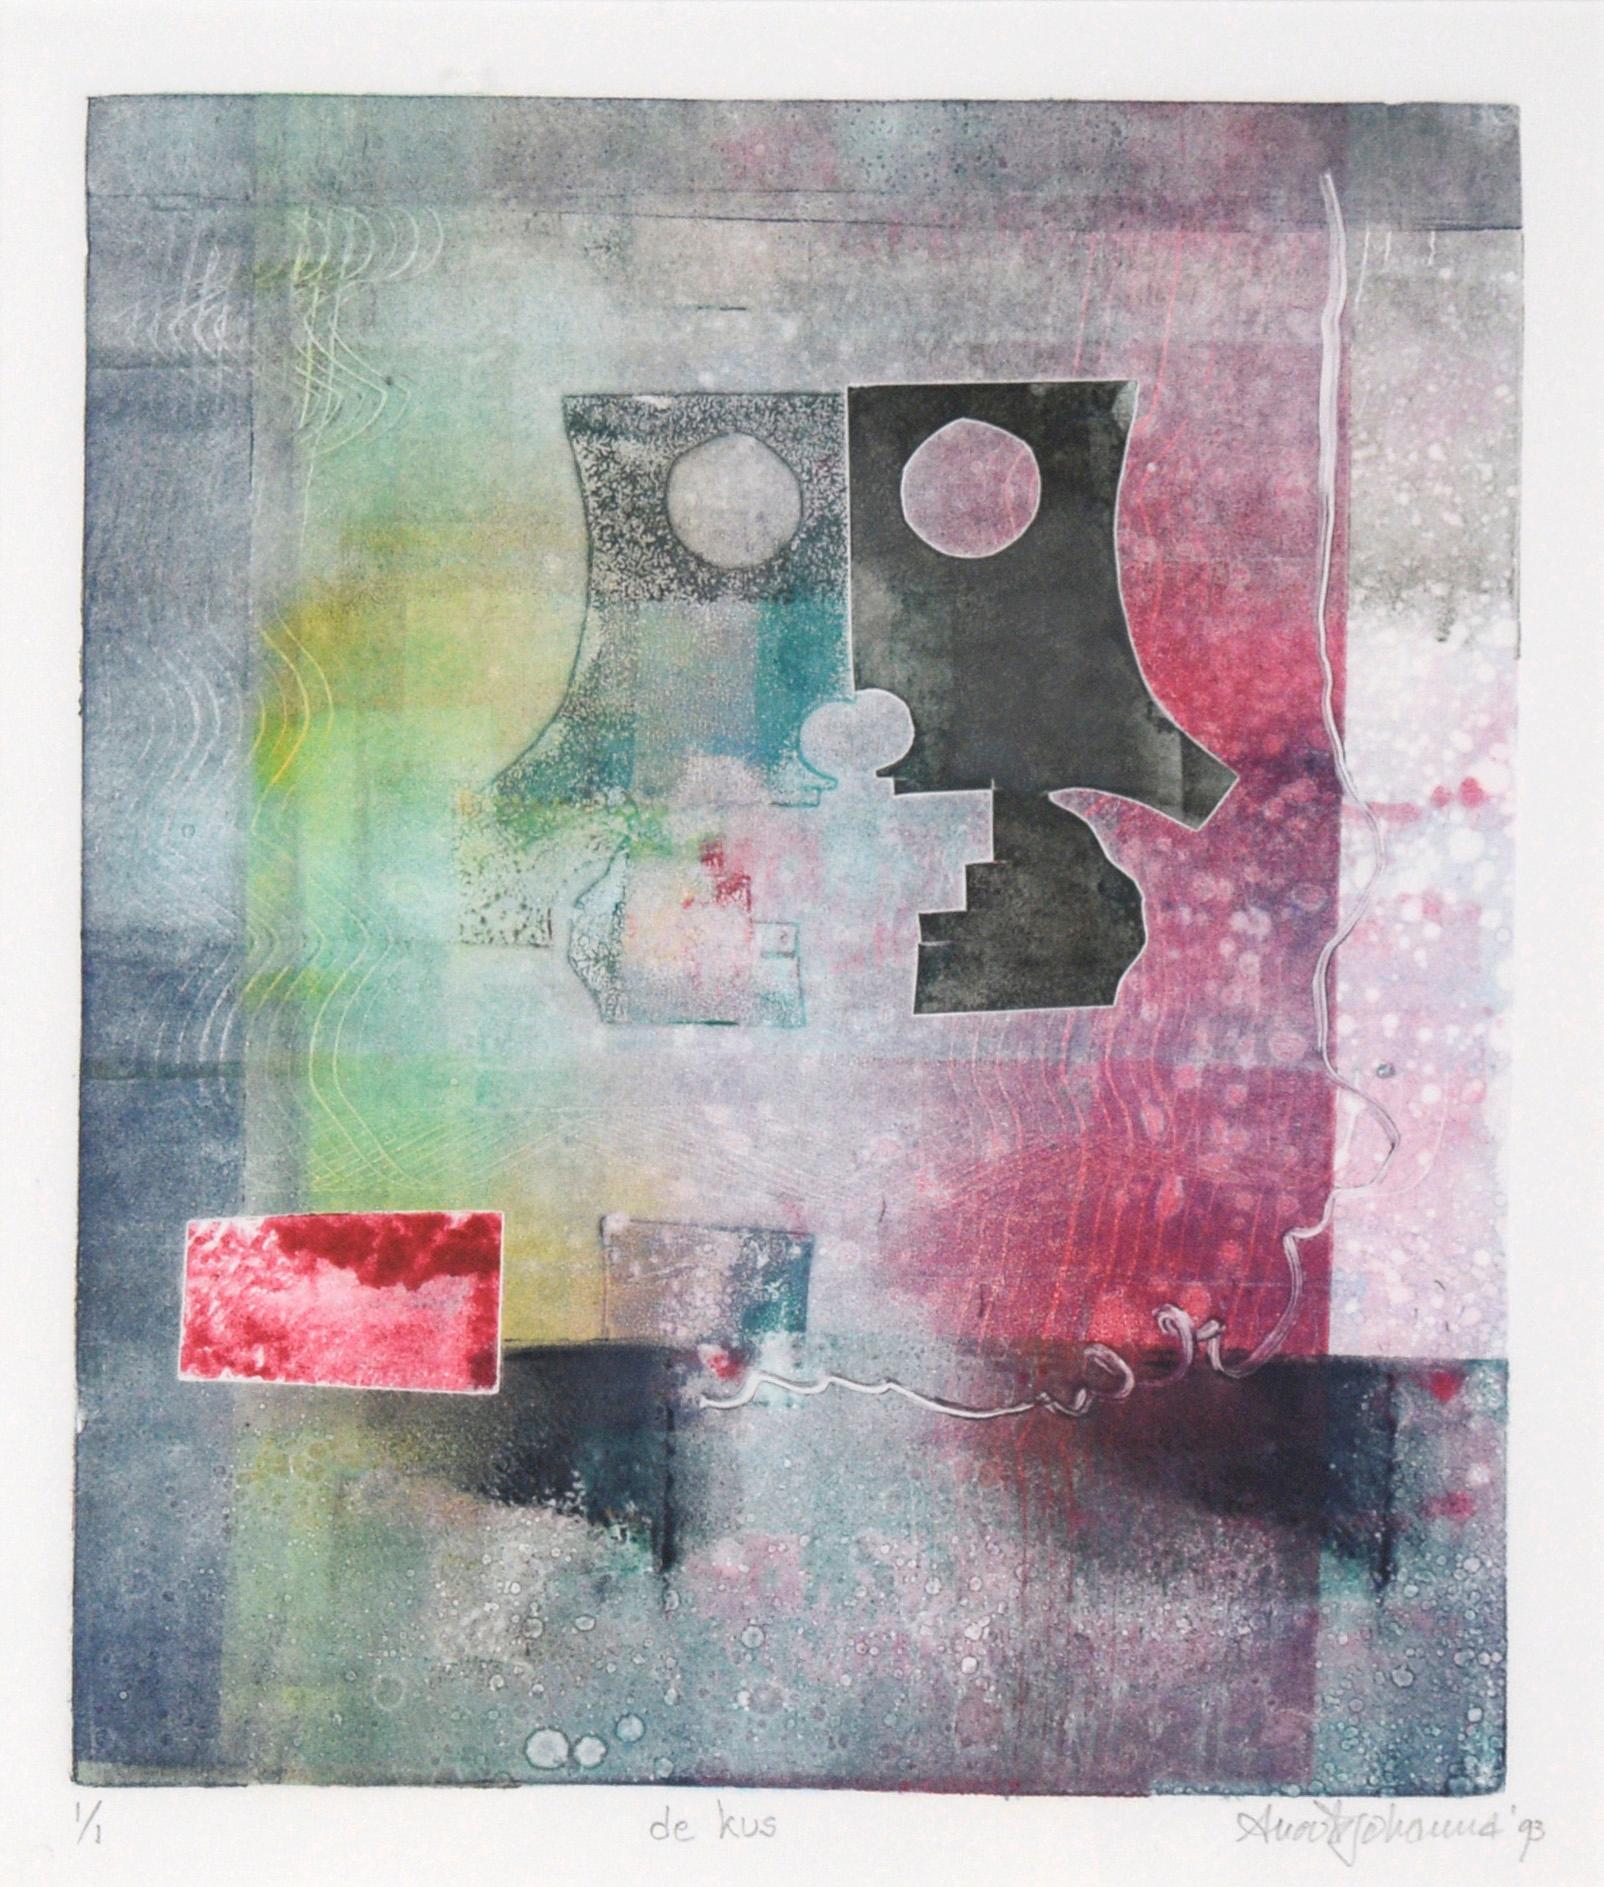 Abstrakte Monotypie „de Kus“ (Der Kus) in Tinte auf Papier – Painting von Anouk Johanna